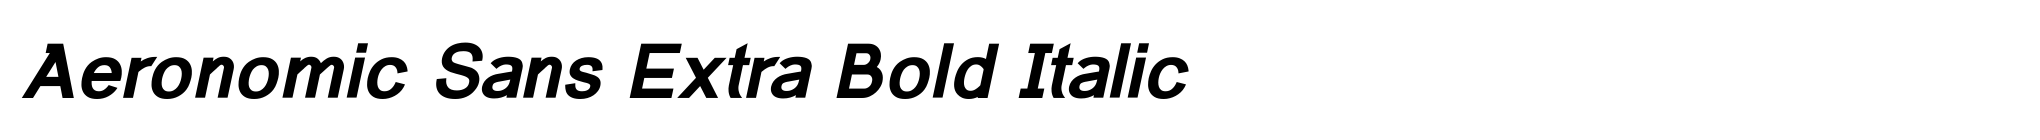 Aeronomic Sans Extra Bold Italic image